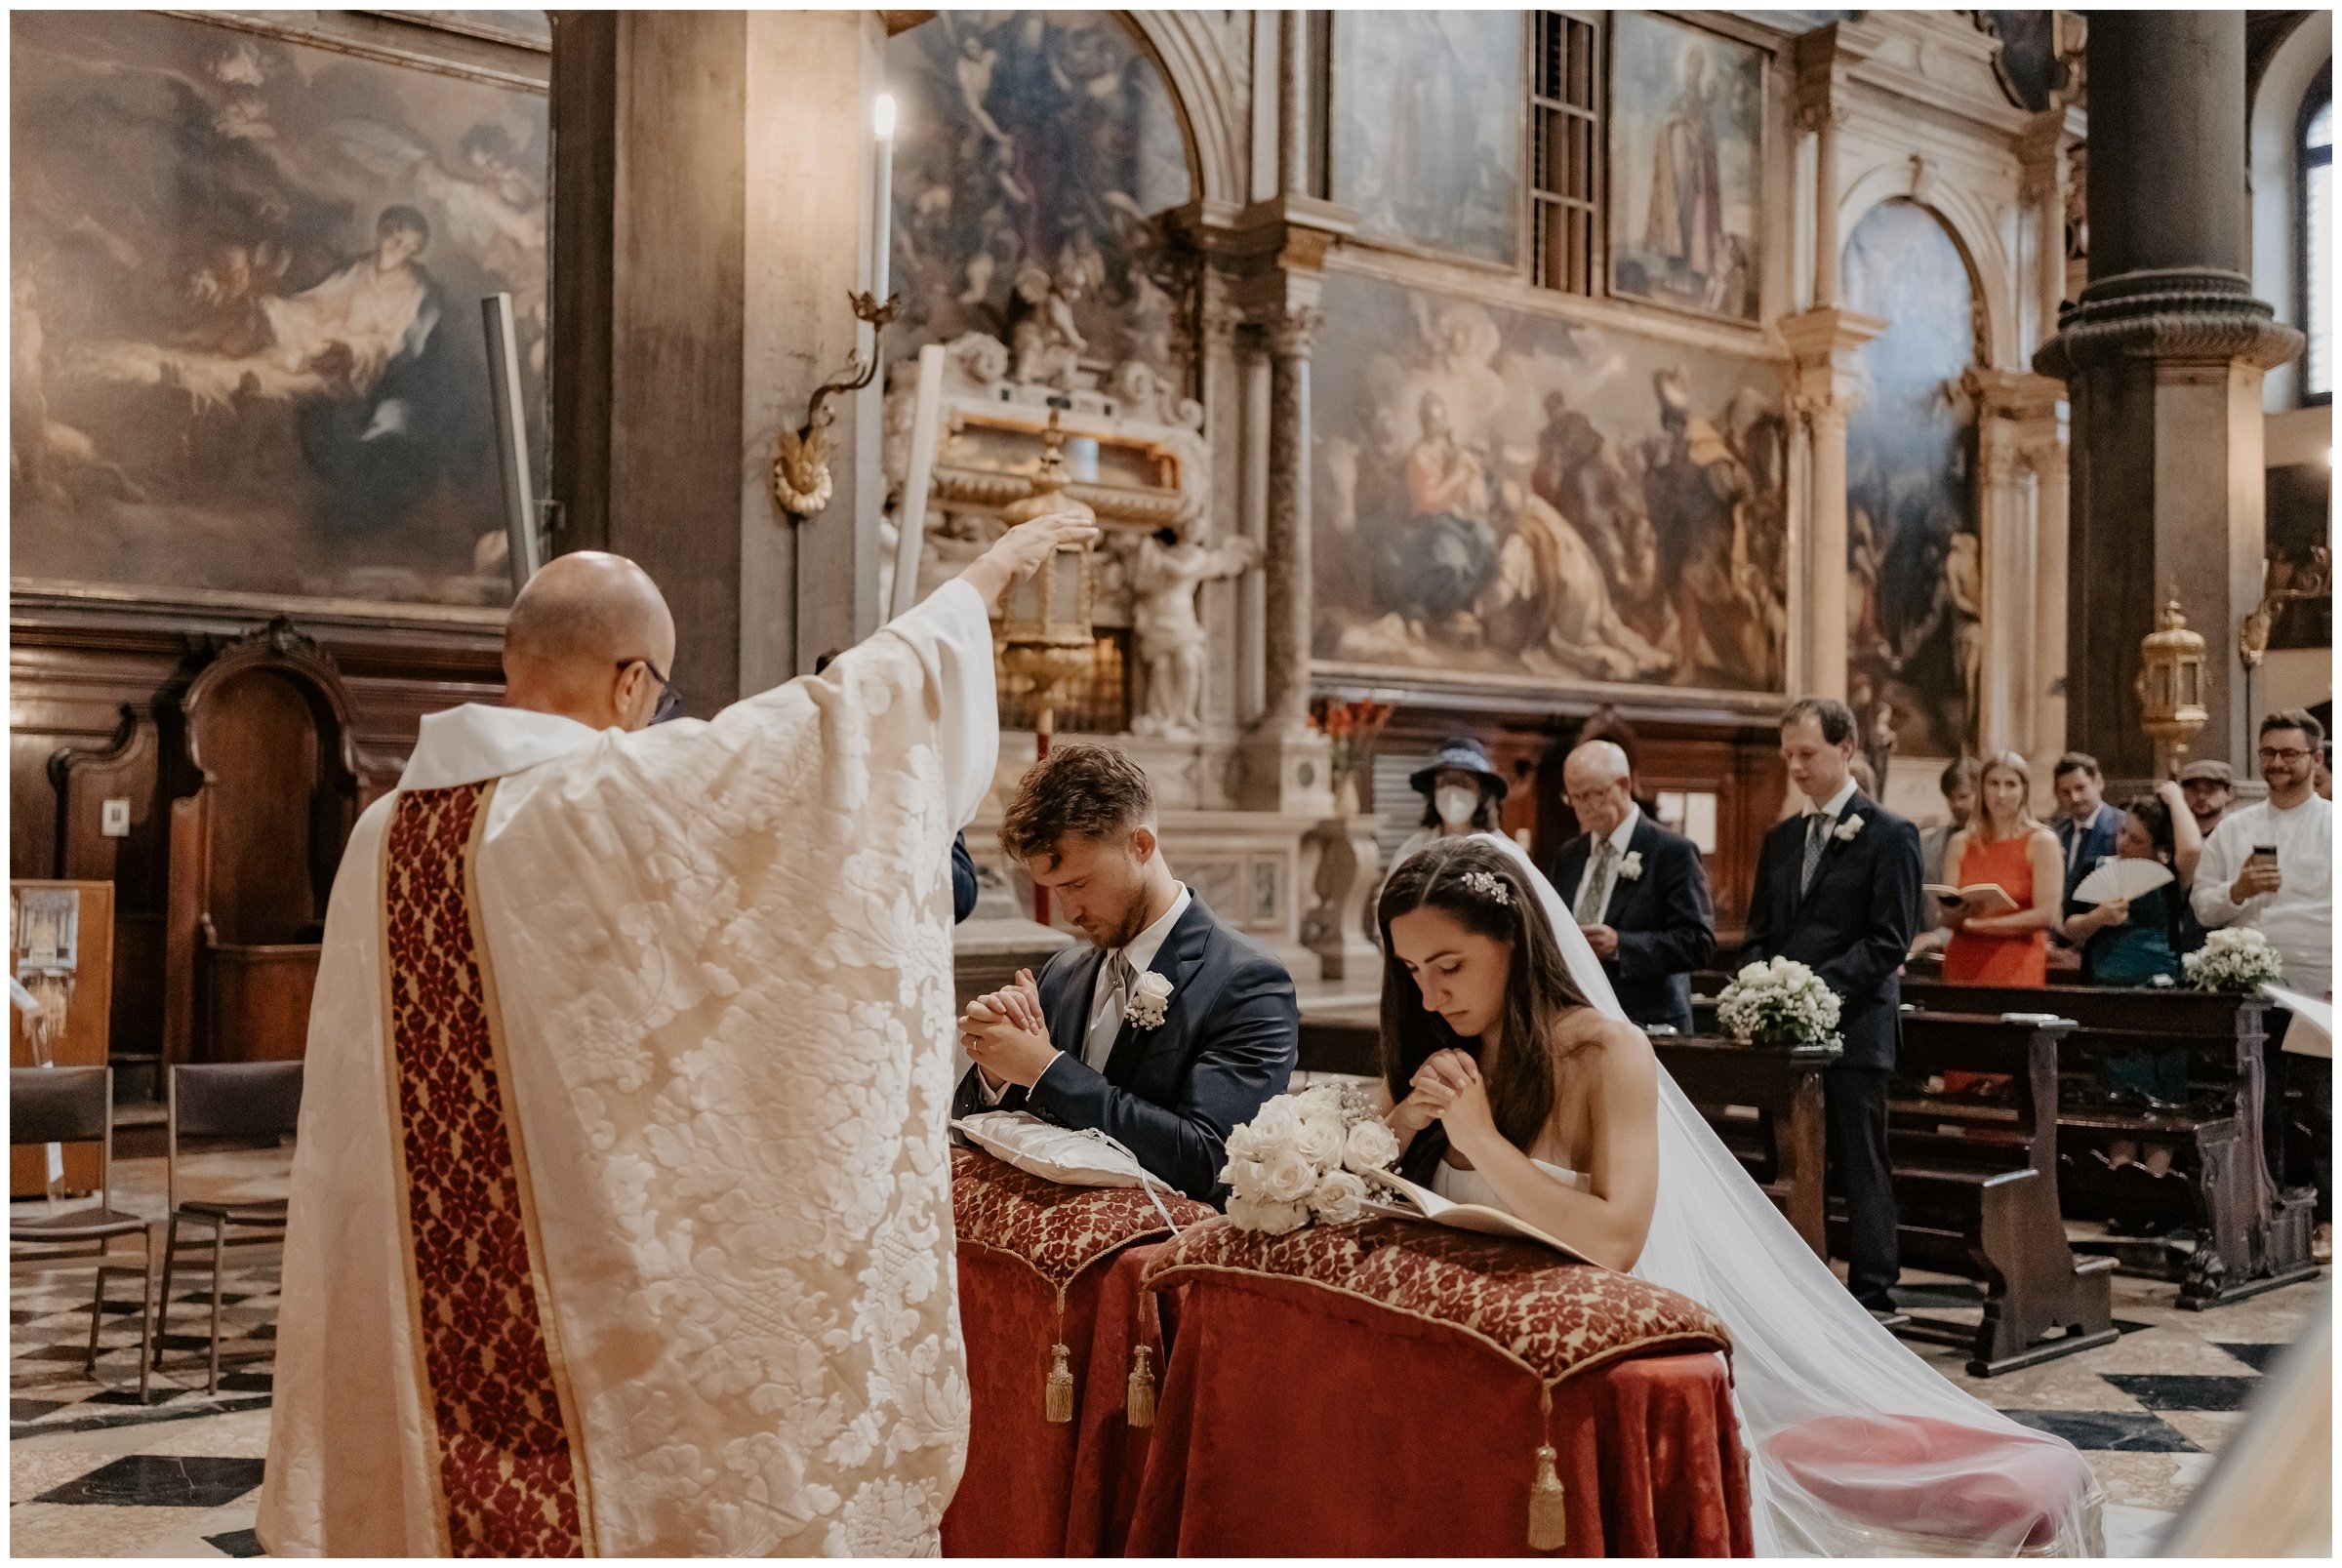 Matrimonio-san-servolo-fotografo-matrimonio-treviso-fotografo-matrimonio-venezia_0112.jpg